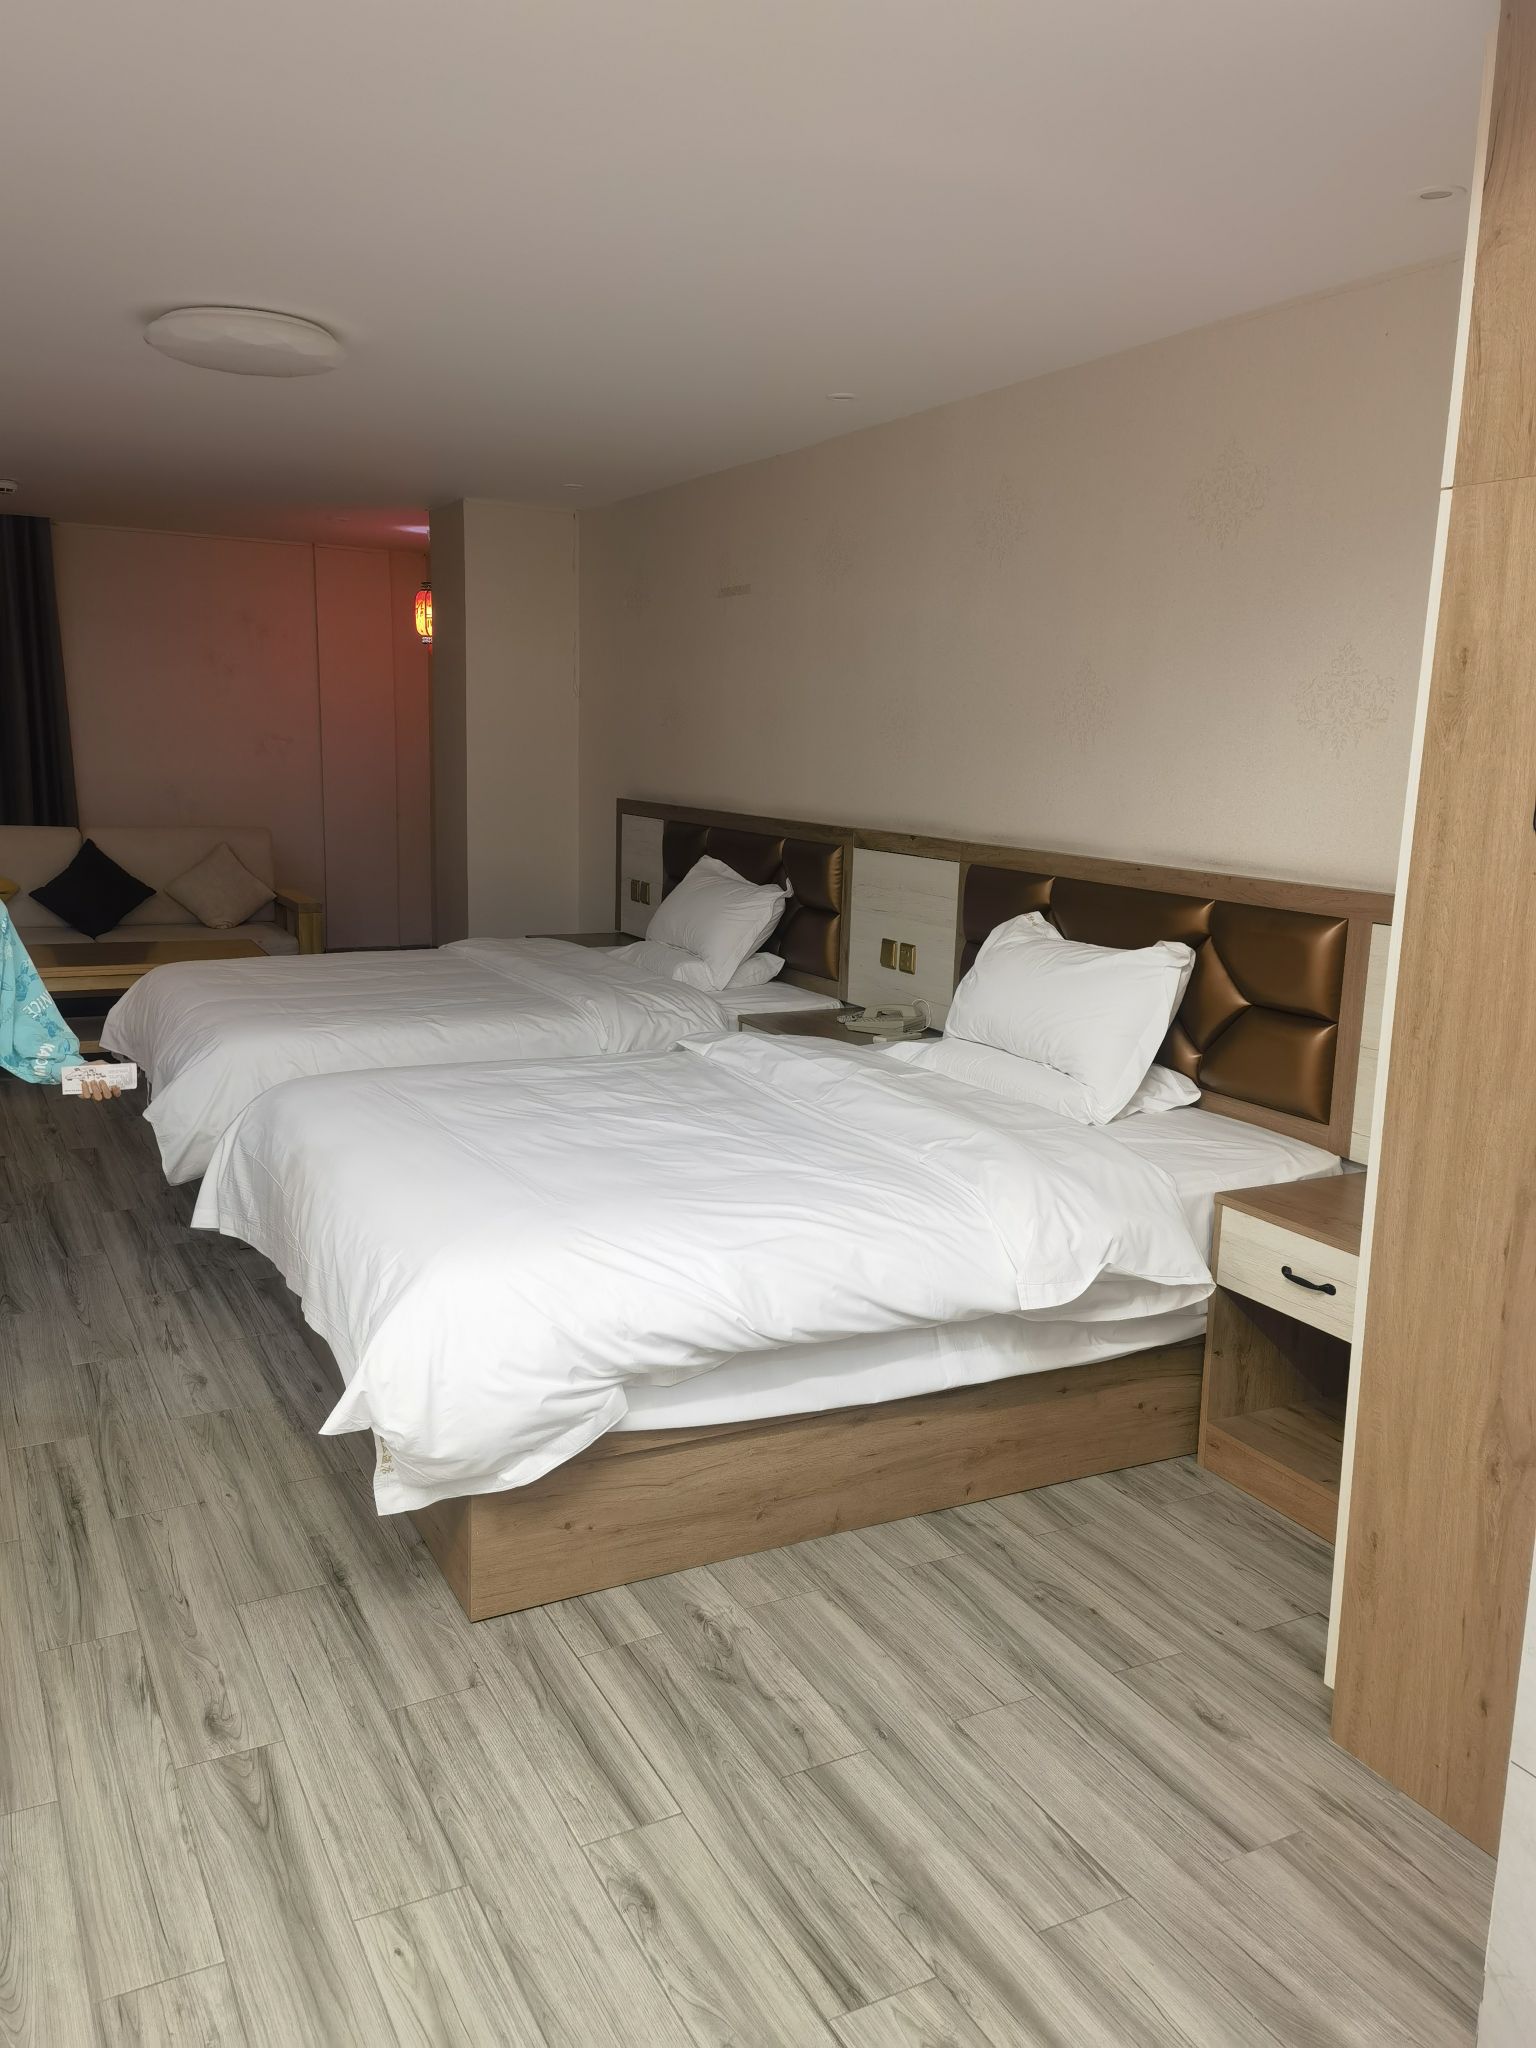 第一次到闽清，首站到上莲森林公园游玩后入住改酒店，房间很宽敞，室内环境还不错，整体性价比还是可以的。